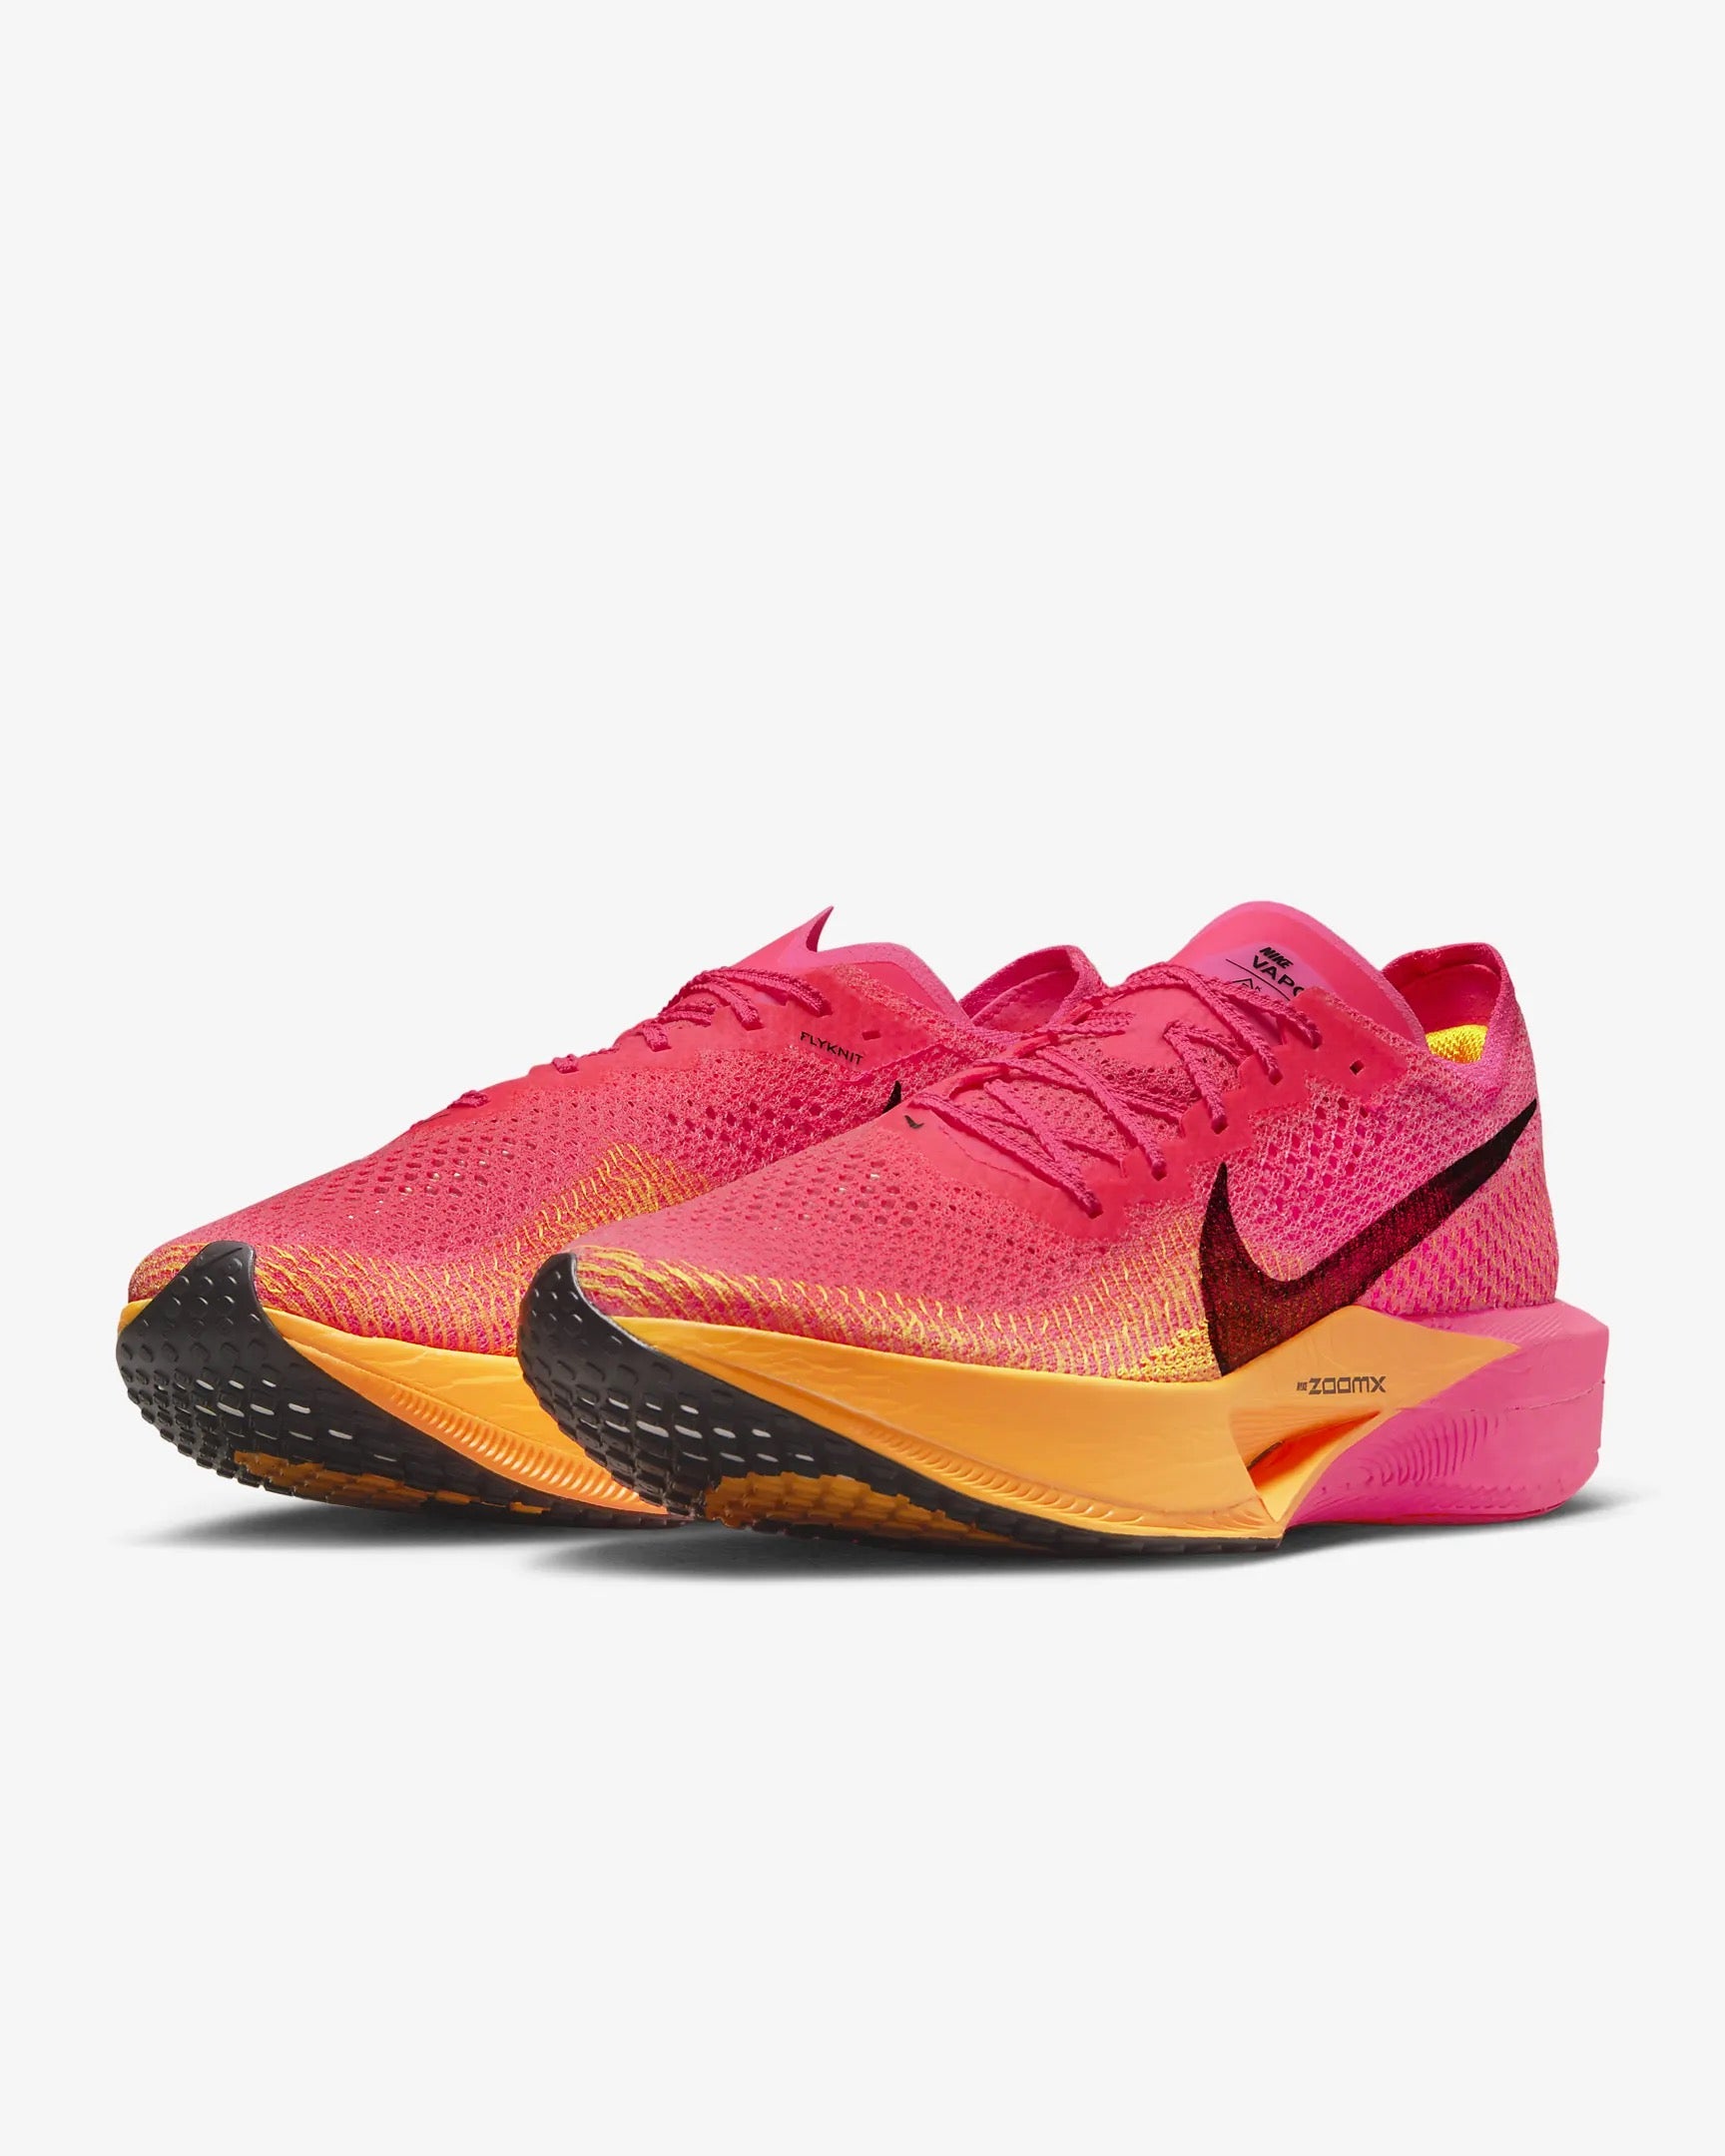 Men's Nike Zoomx Vaporfly Next % 3 – Renegade Running